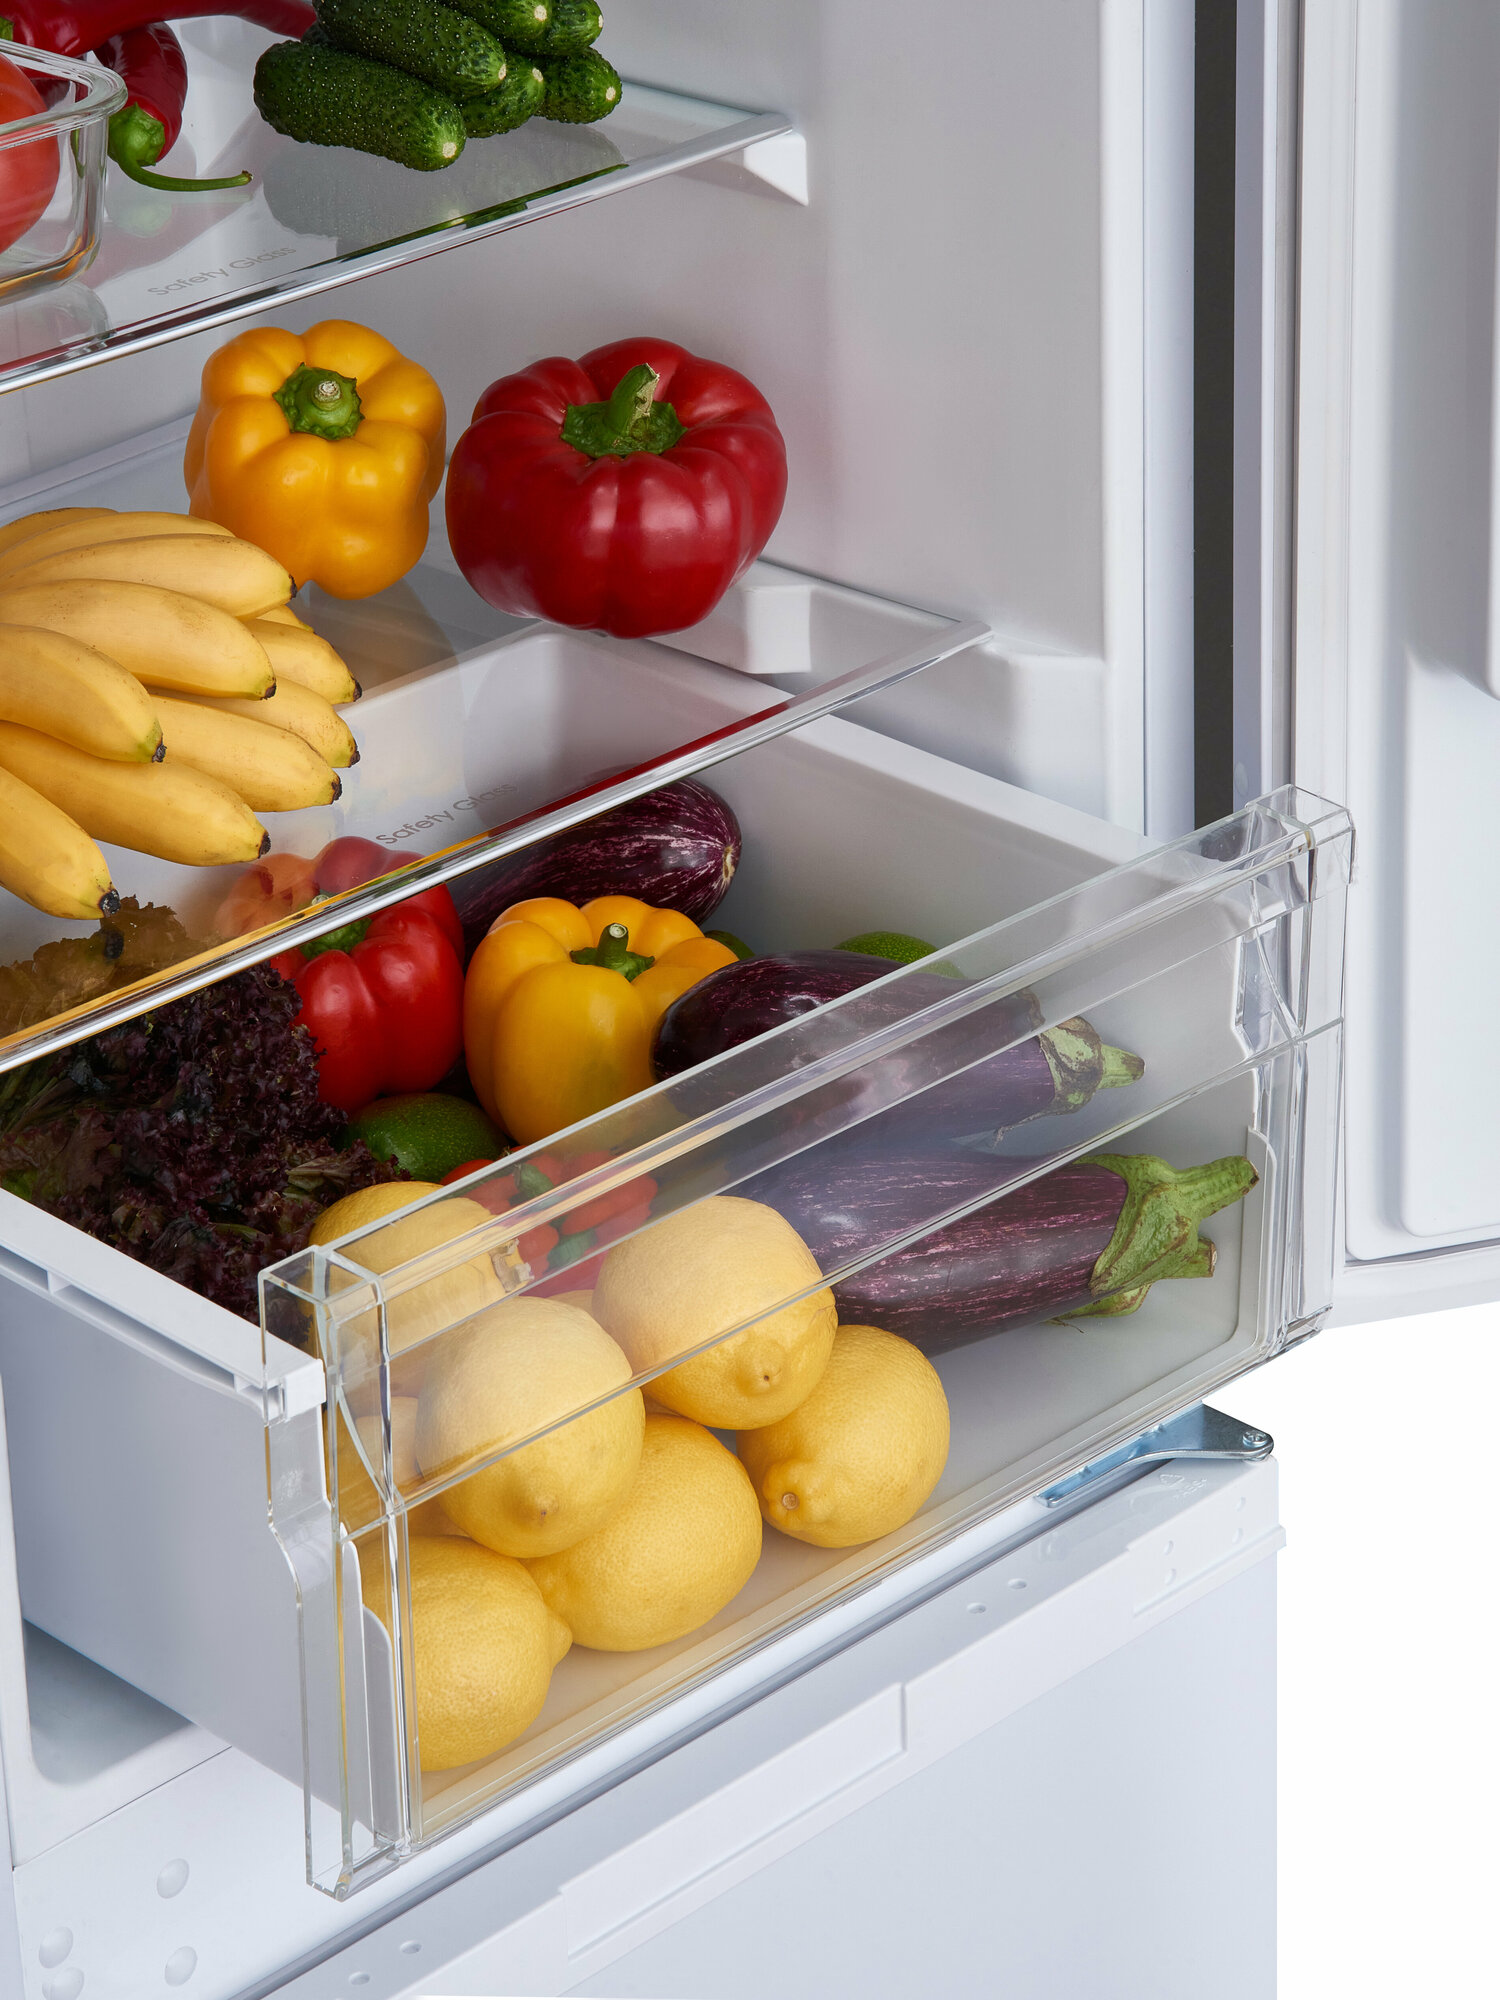 Встраиваемый холодильник Ascoli ADRF250WEMBI